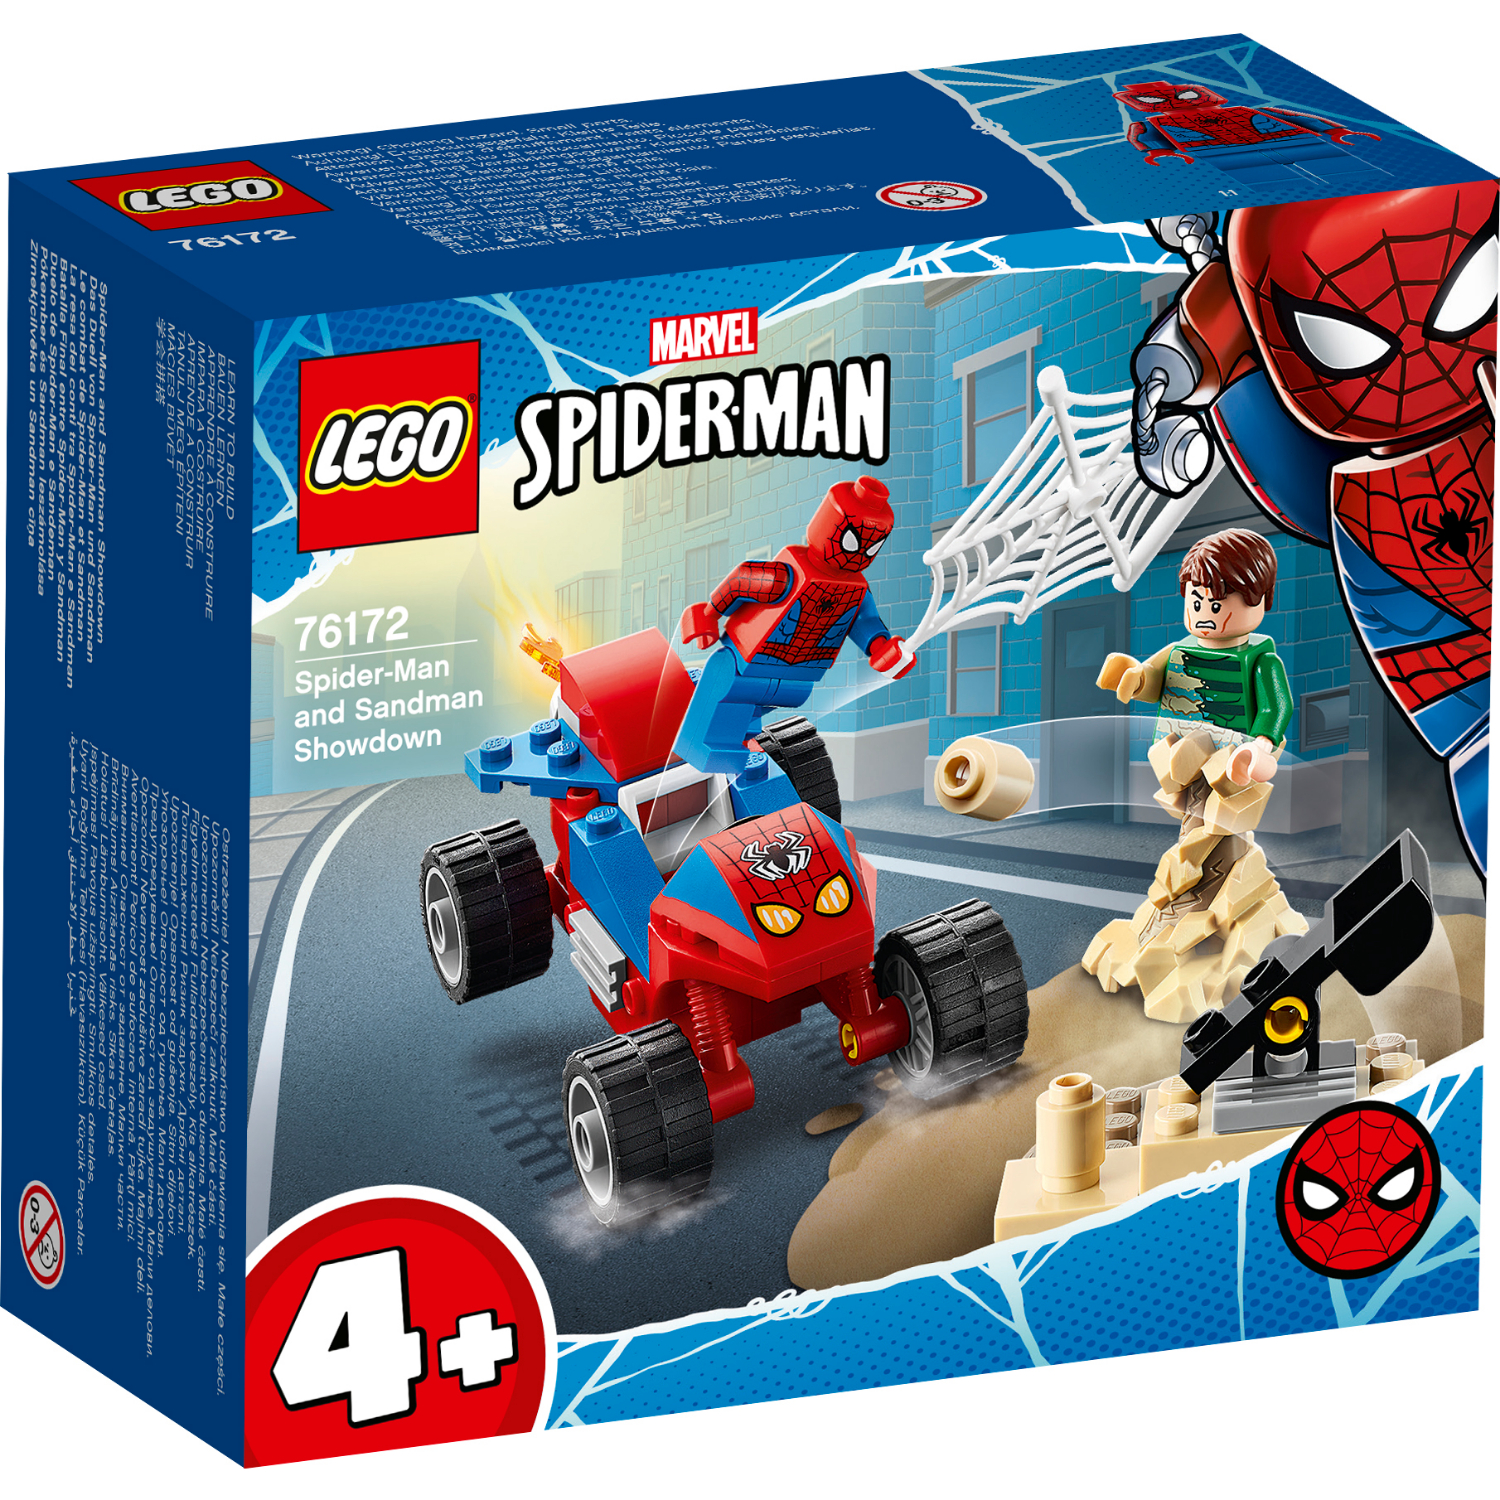 LEGO MARVEL SPIDER-MAN 76172: SPIDER-MAN DUEL SPIDER-MAN EN